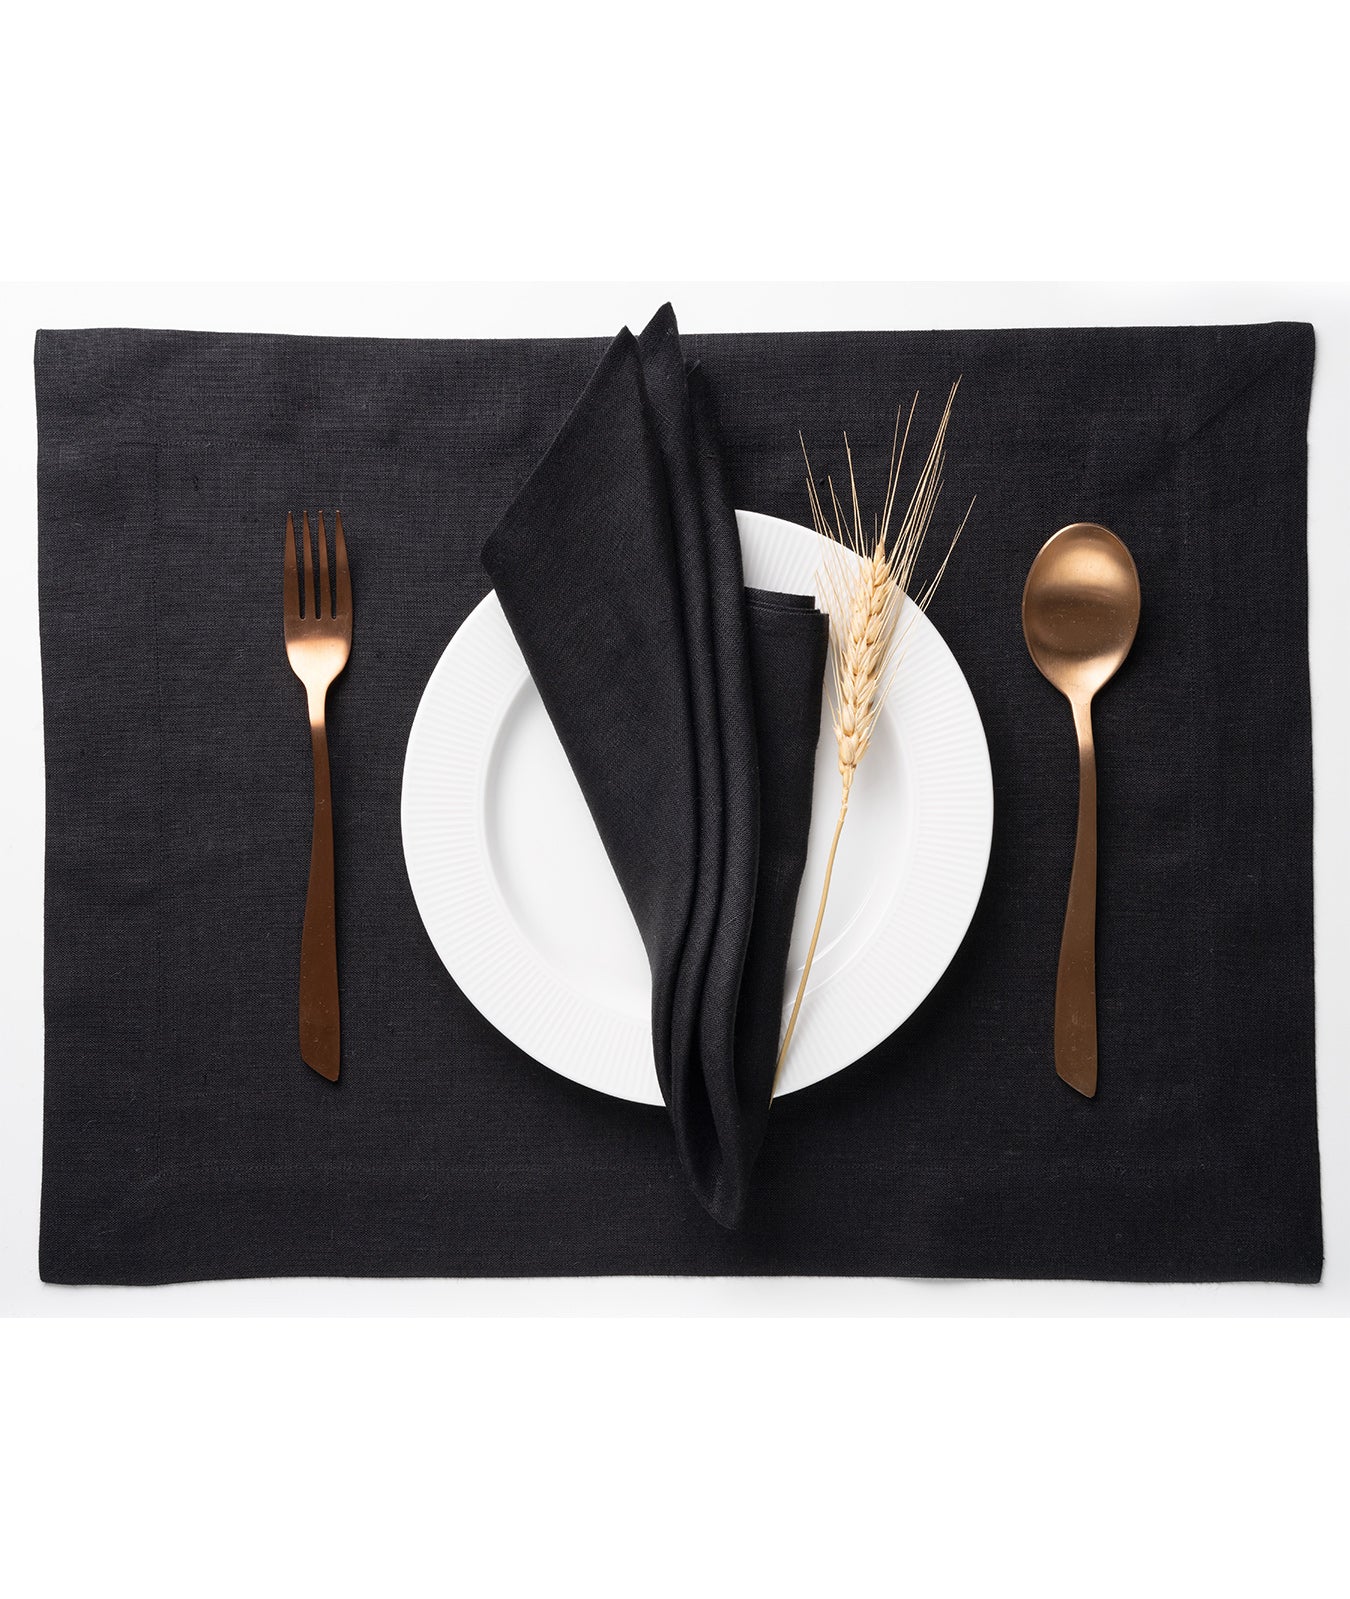 Black Linen Dinner Napkins 18 x 18 Inch Set of 4 - Hemmed